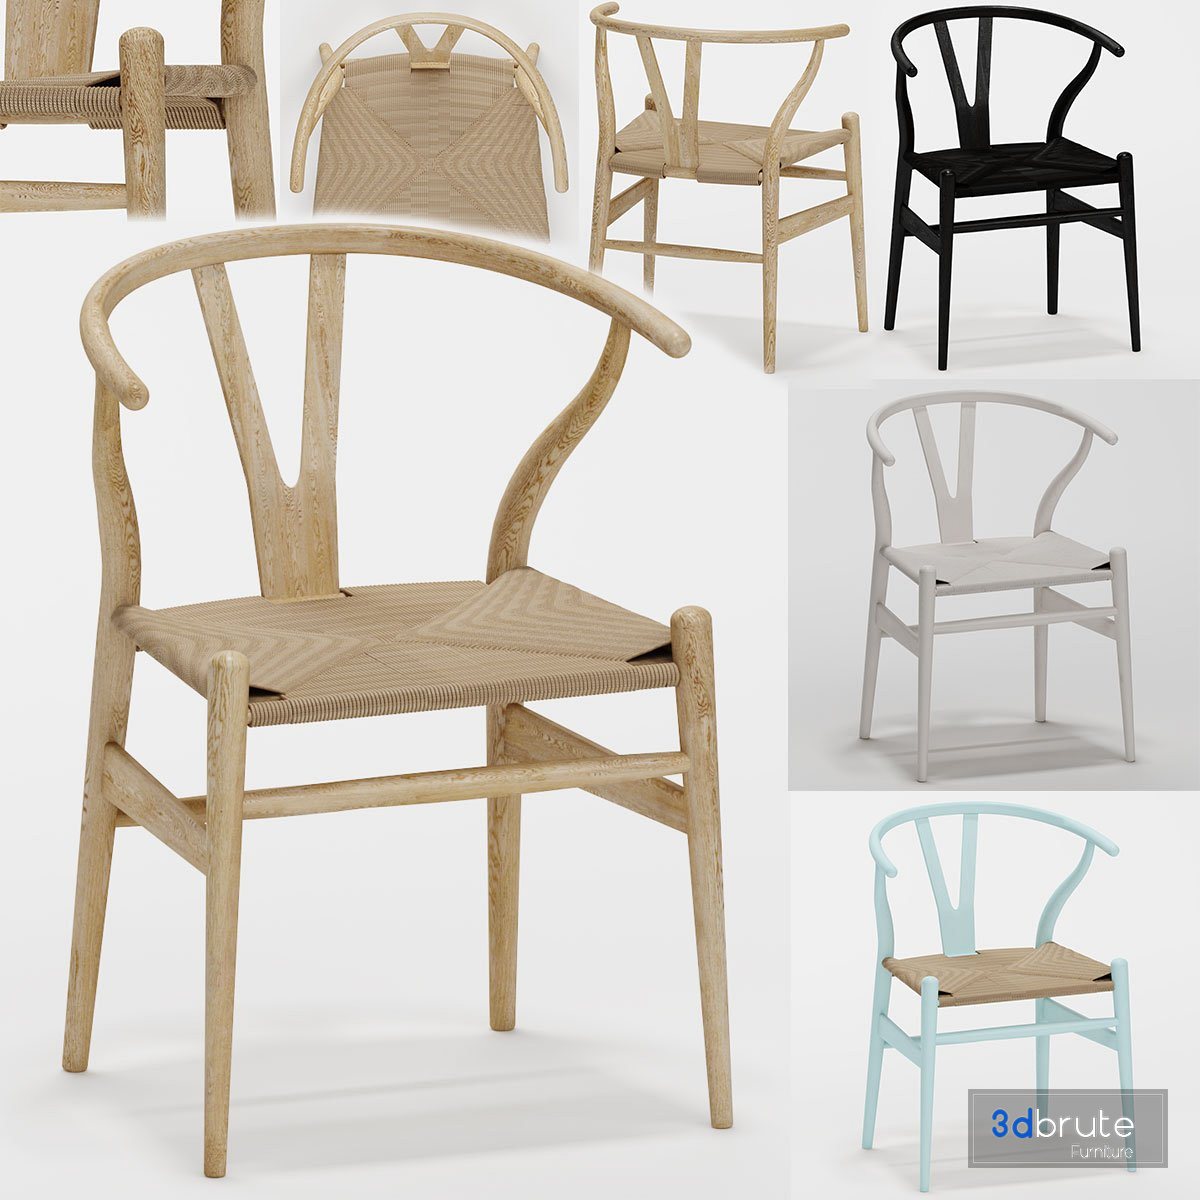 Простые стул кресло модели для 3д моделирования.